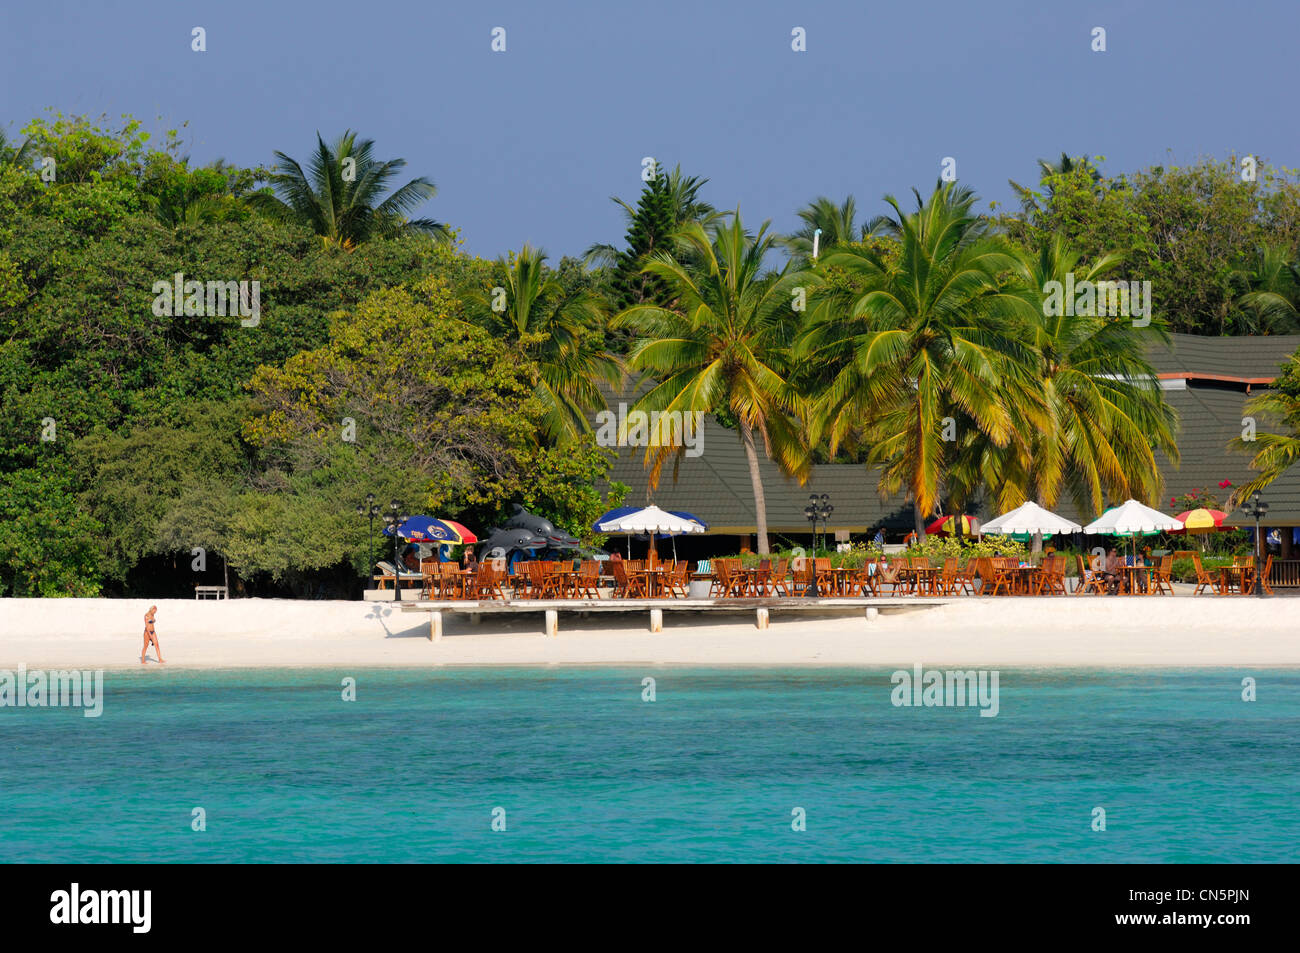 Maldive, North Male Atoll, Lankanfinolhu Island Paradise Island Resort e hotel di spiaggia di sabbia bianca, il bar e il ristorante sul Foto Stock